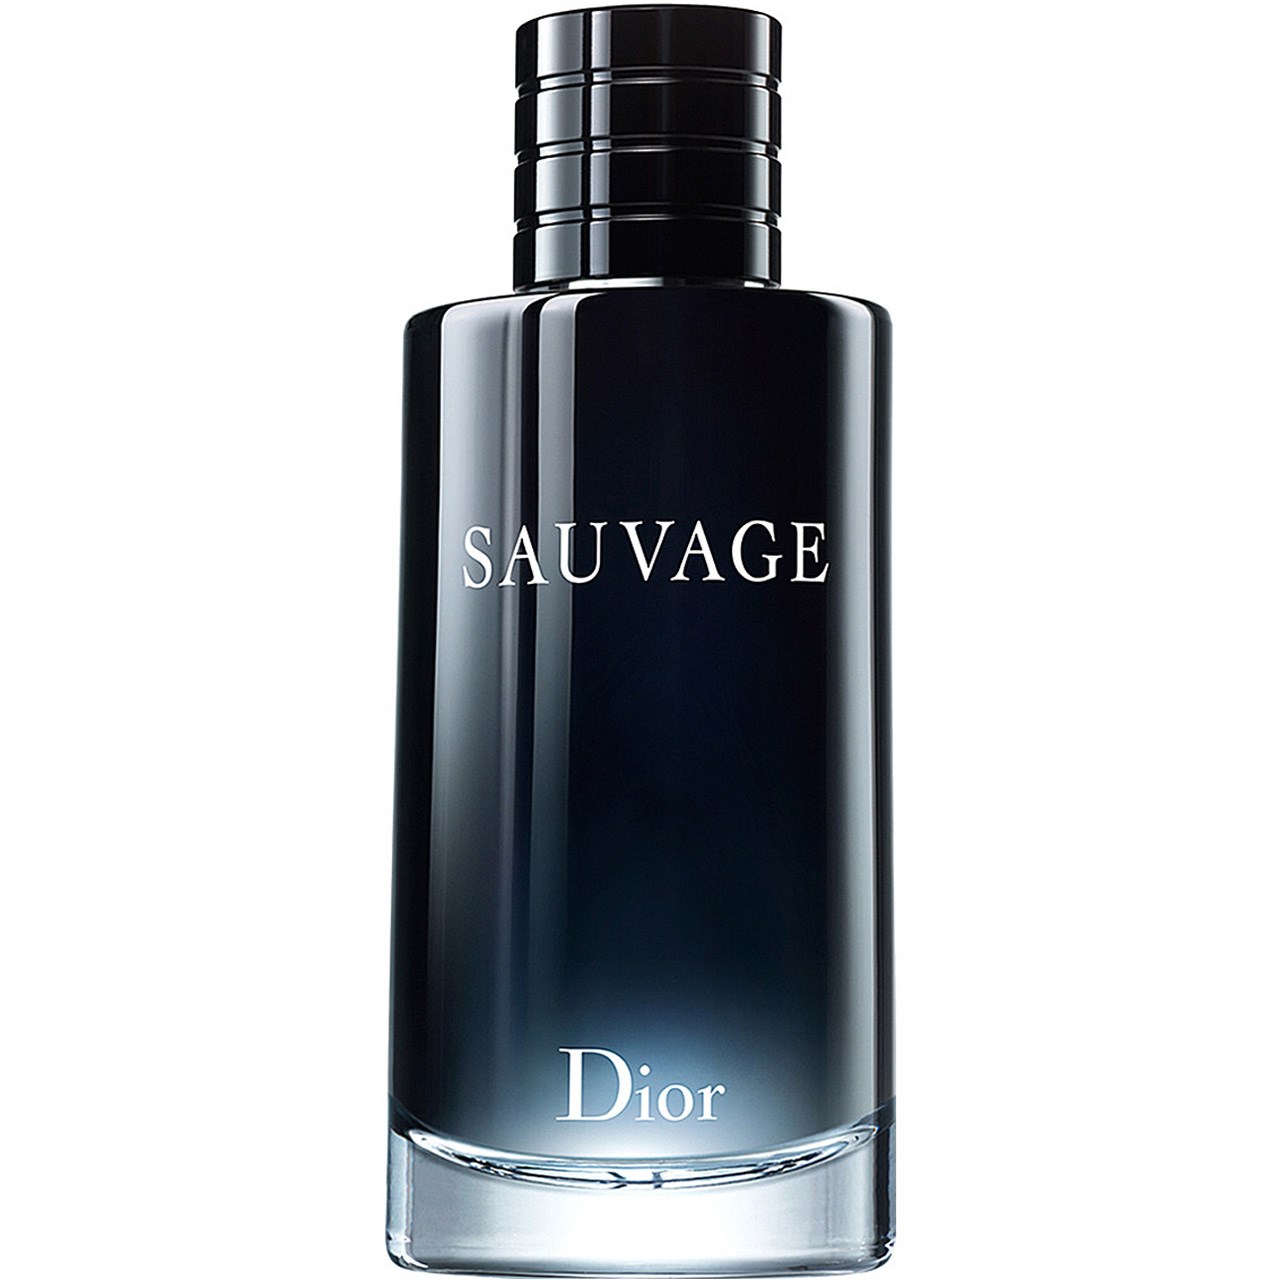 عطر ادکلن دیور ساواج ادو پرفیوم  Dior Sauvage Eau de Parfum  قیمت و خرید   عطر لیلیوم